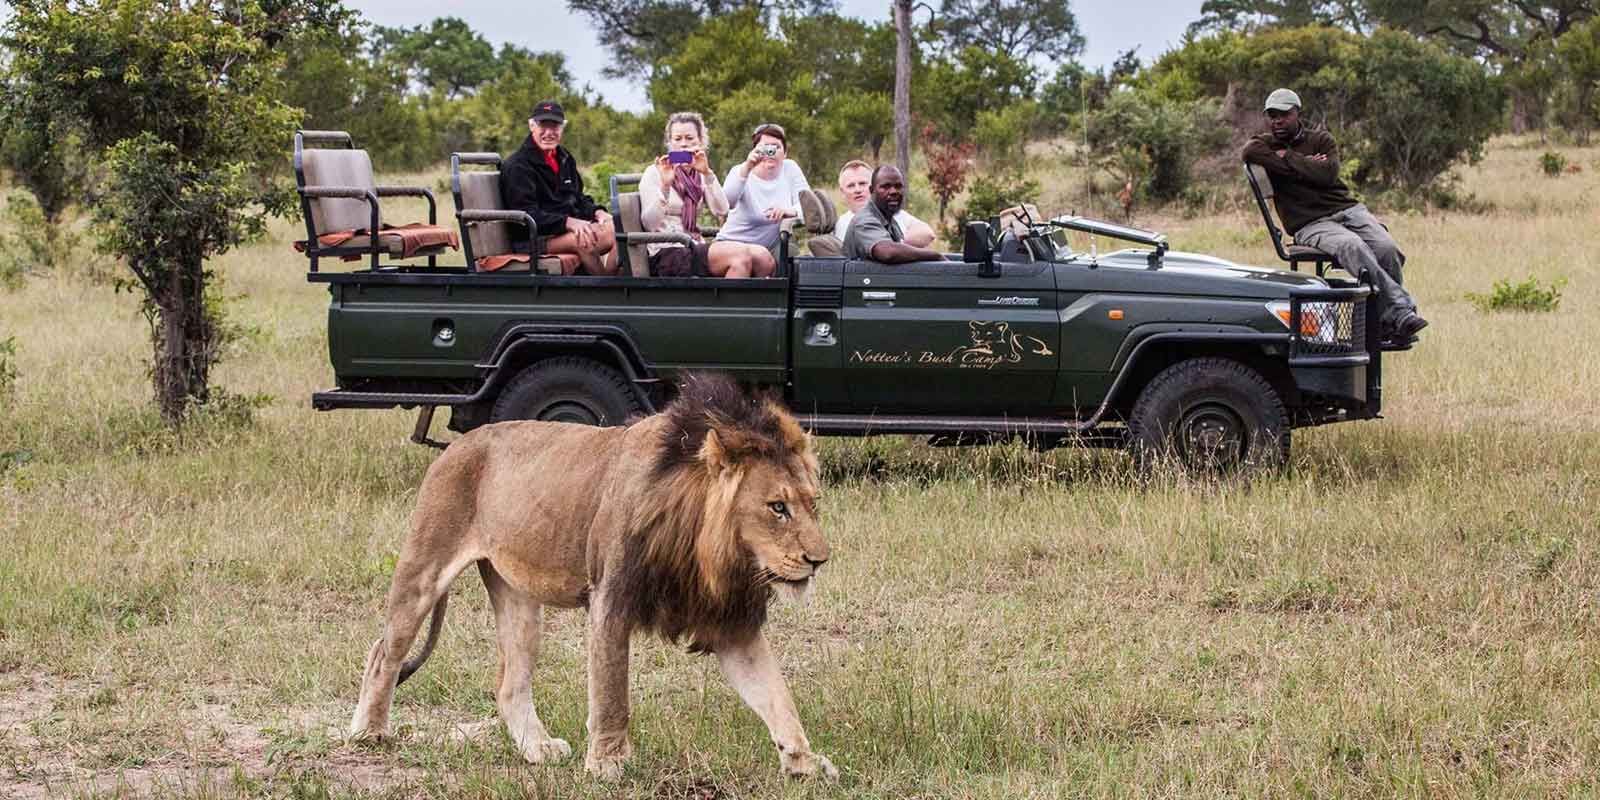 South Africa's Safari Adventures